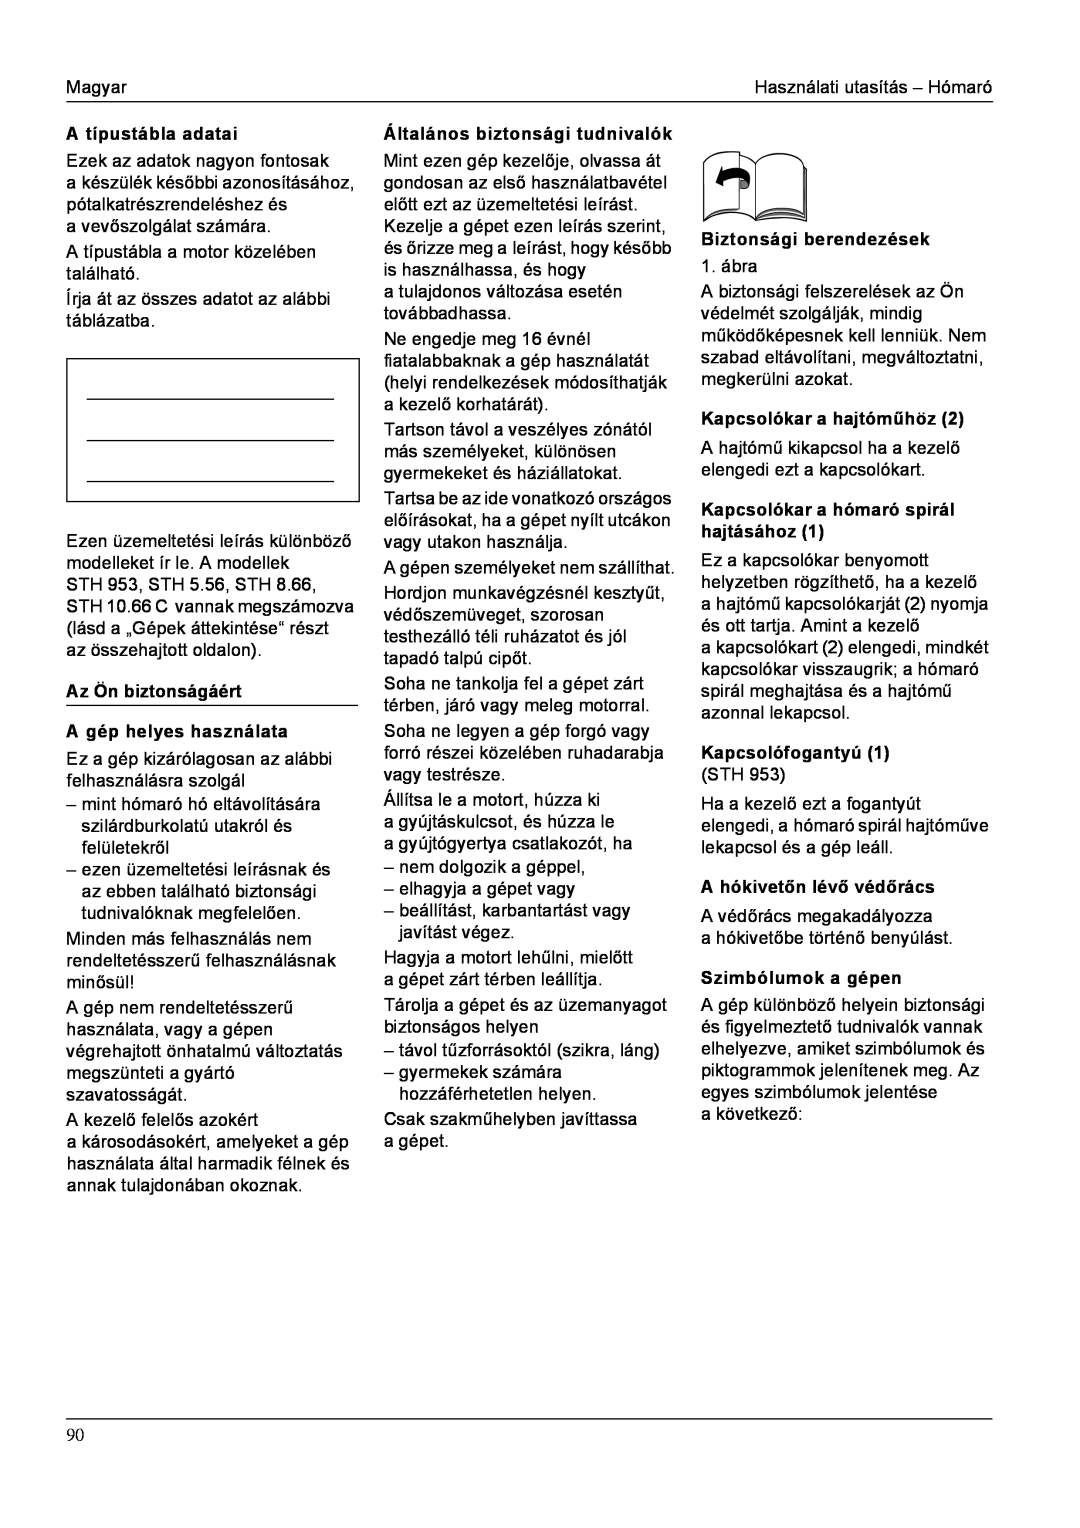 Karcher STH 8.66 manual A típustábla adatai, Az Ön biztonságáért A gép helyes használata, Általános biztonsági tudnivalók 